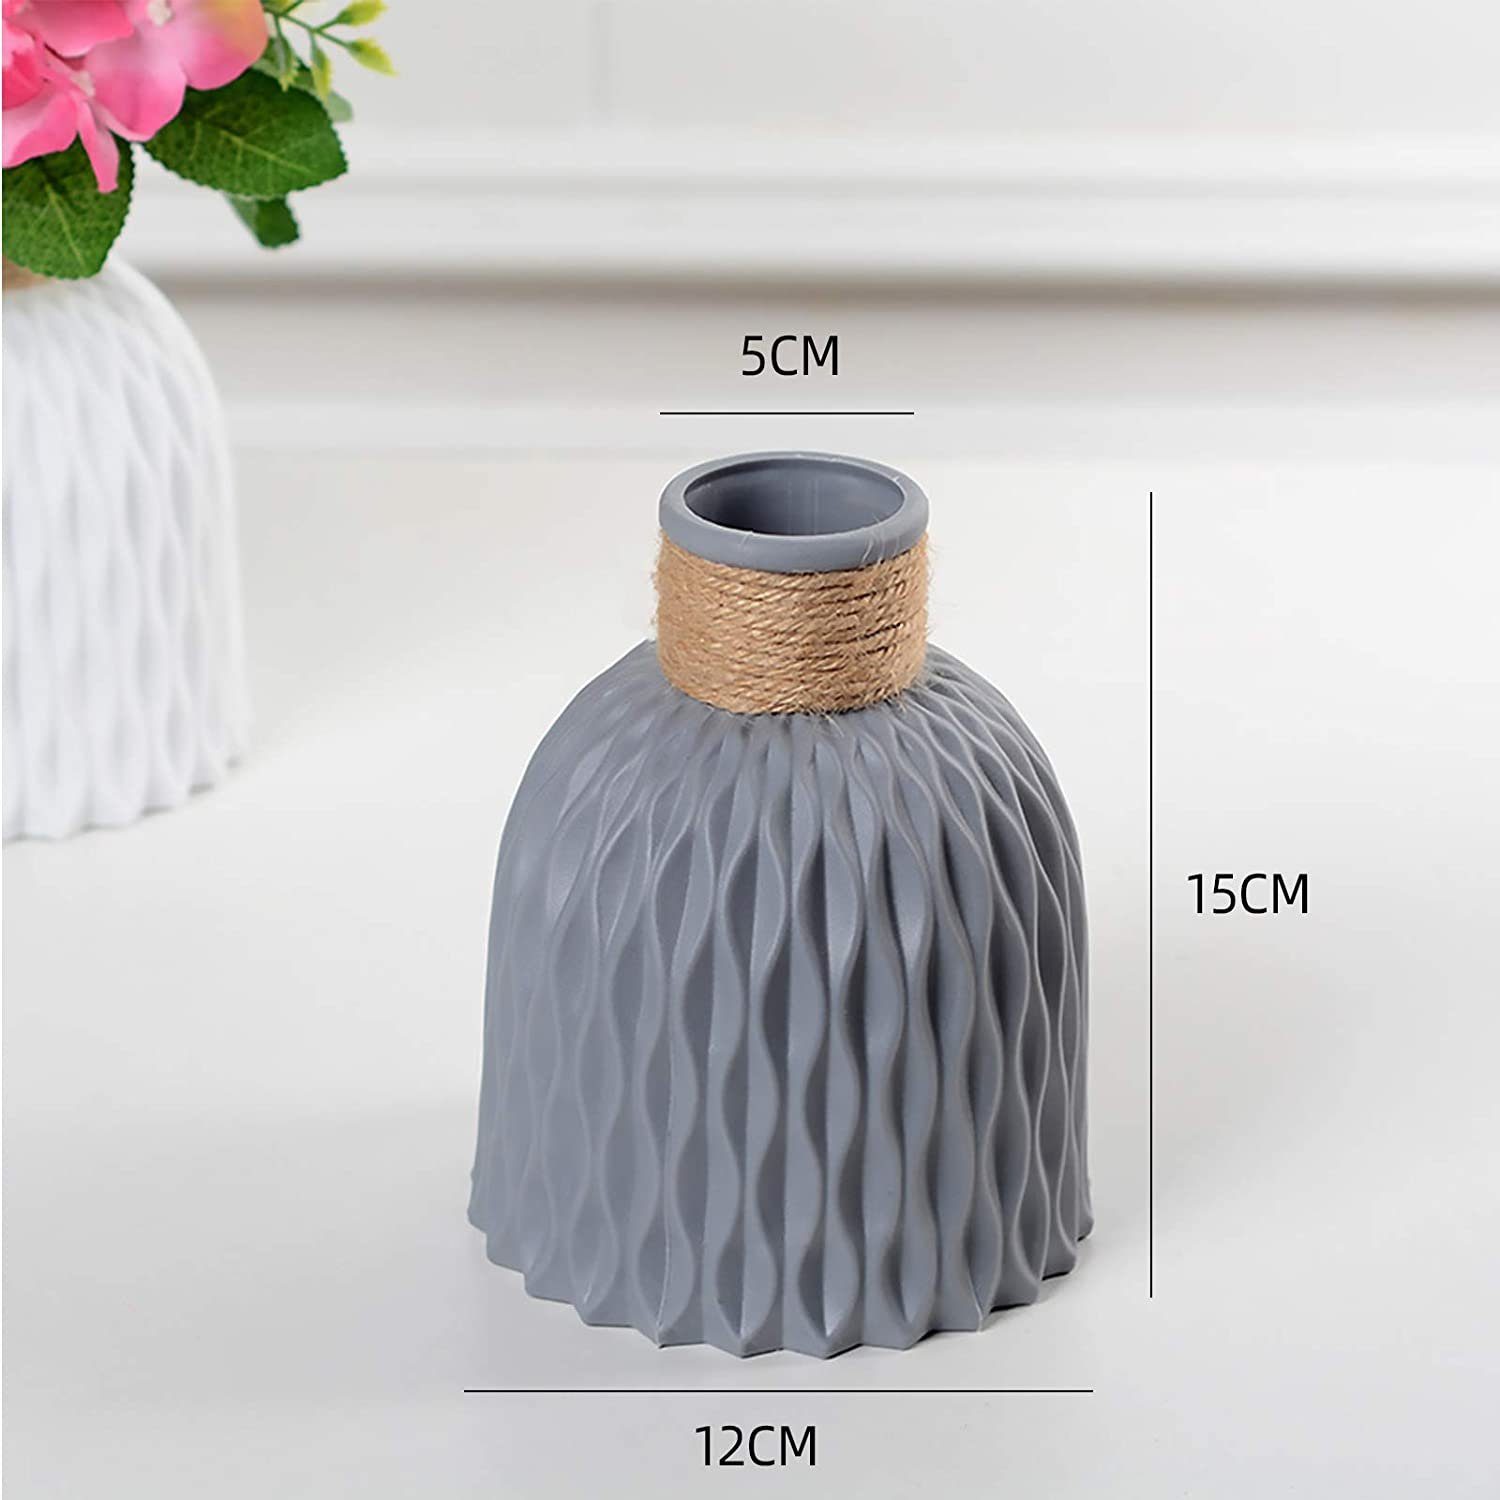 für Blumen Vase, Jormftte Nordic Vasen Kunststoff Dekovase